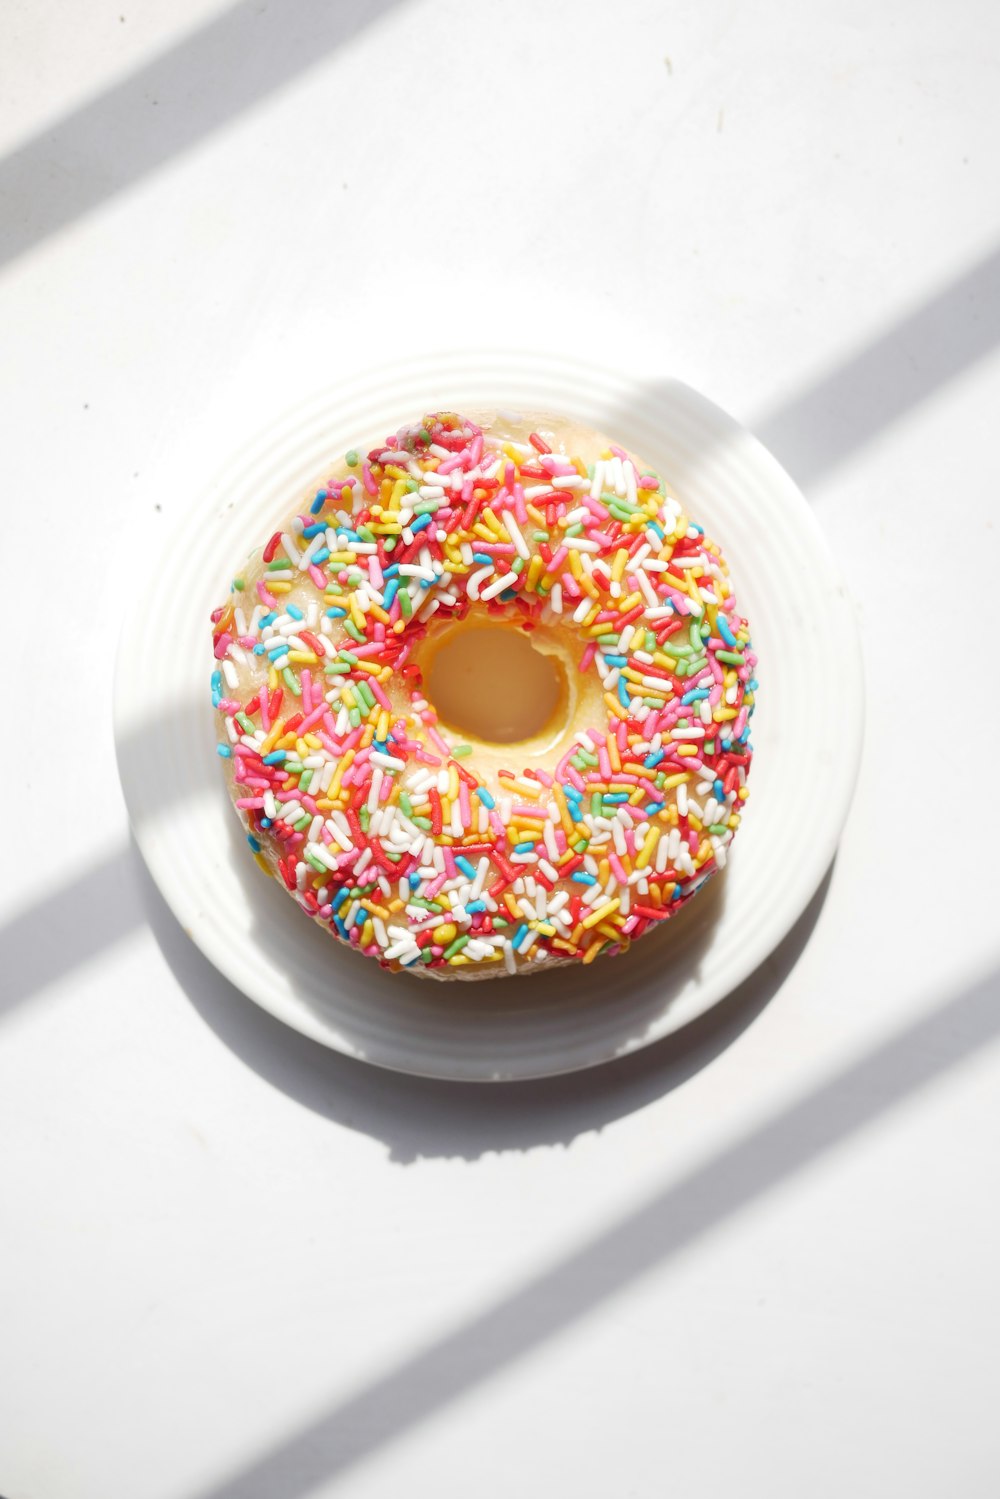 doughnut on white ceramic plate